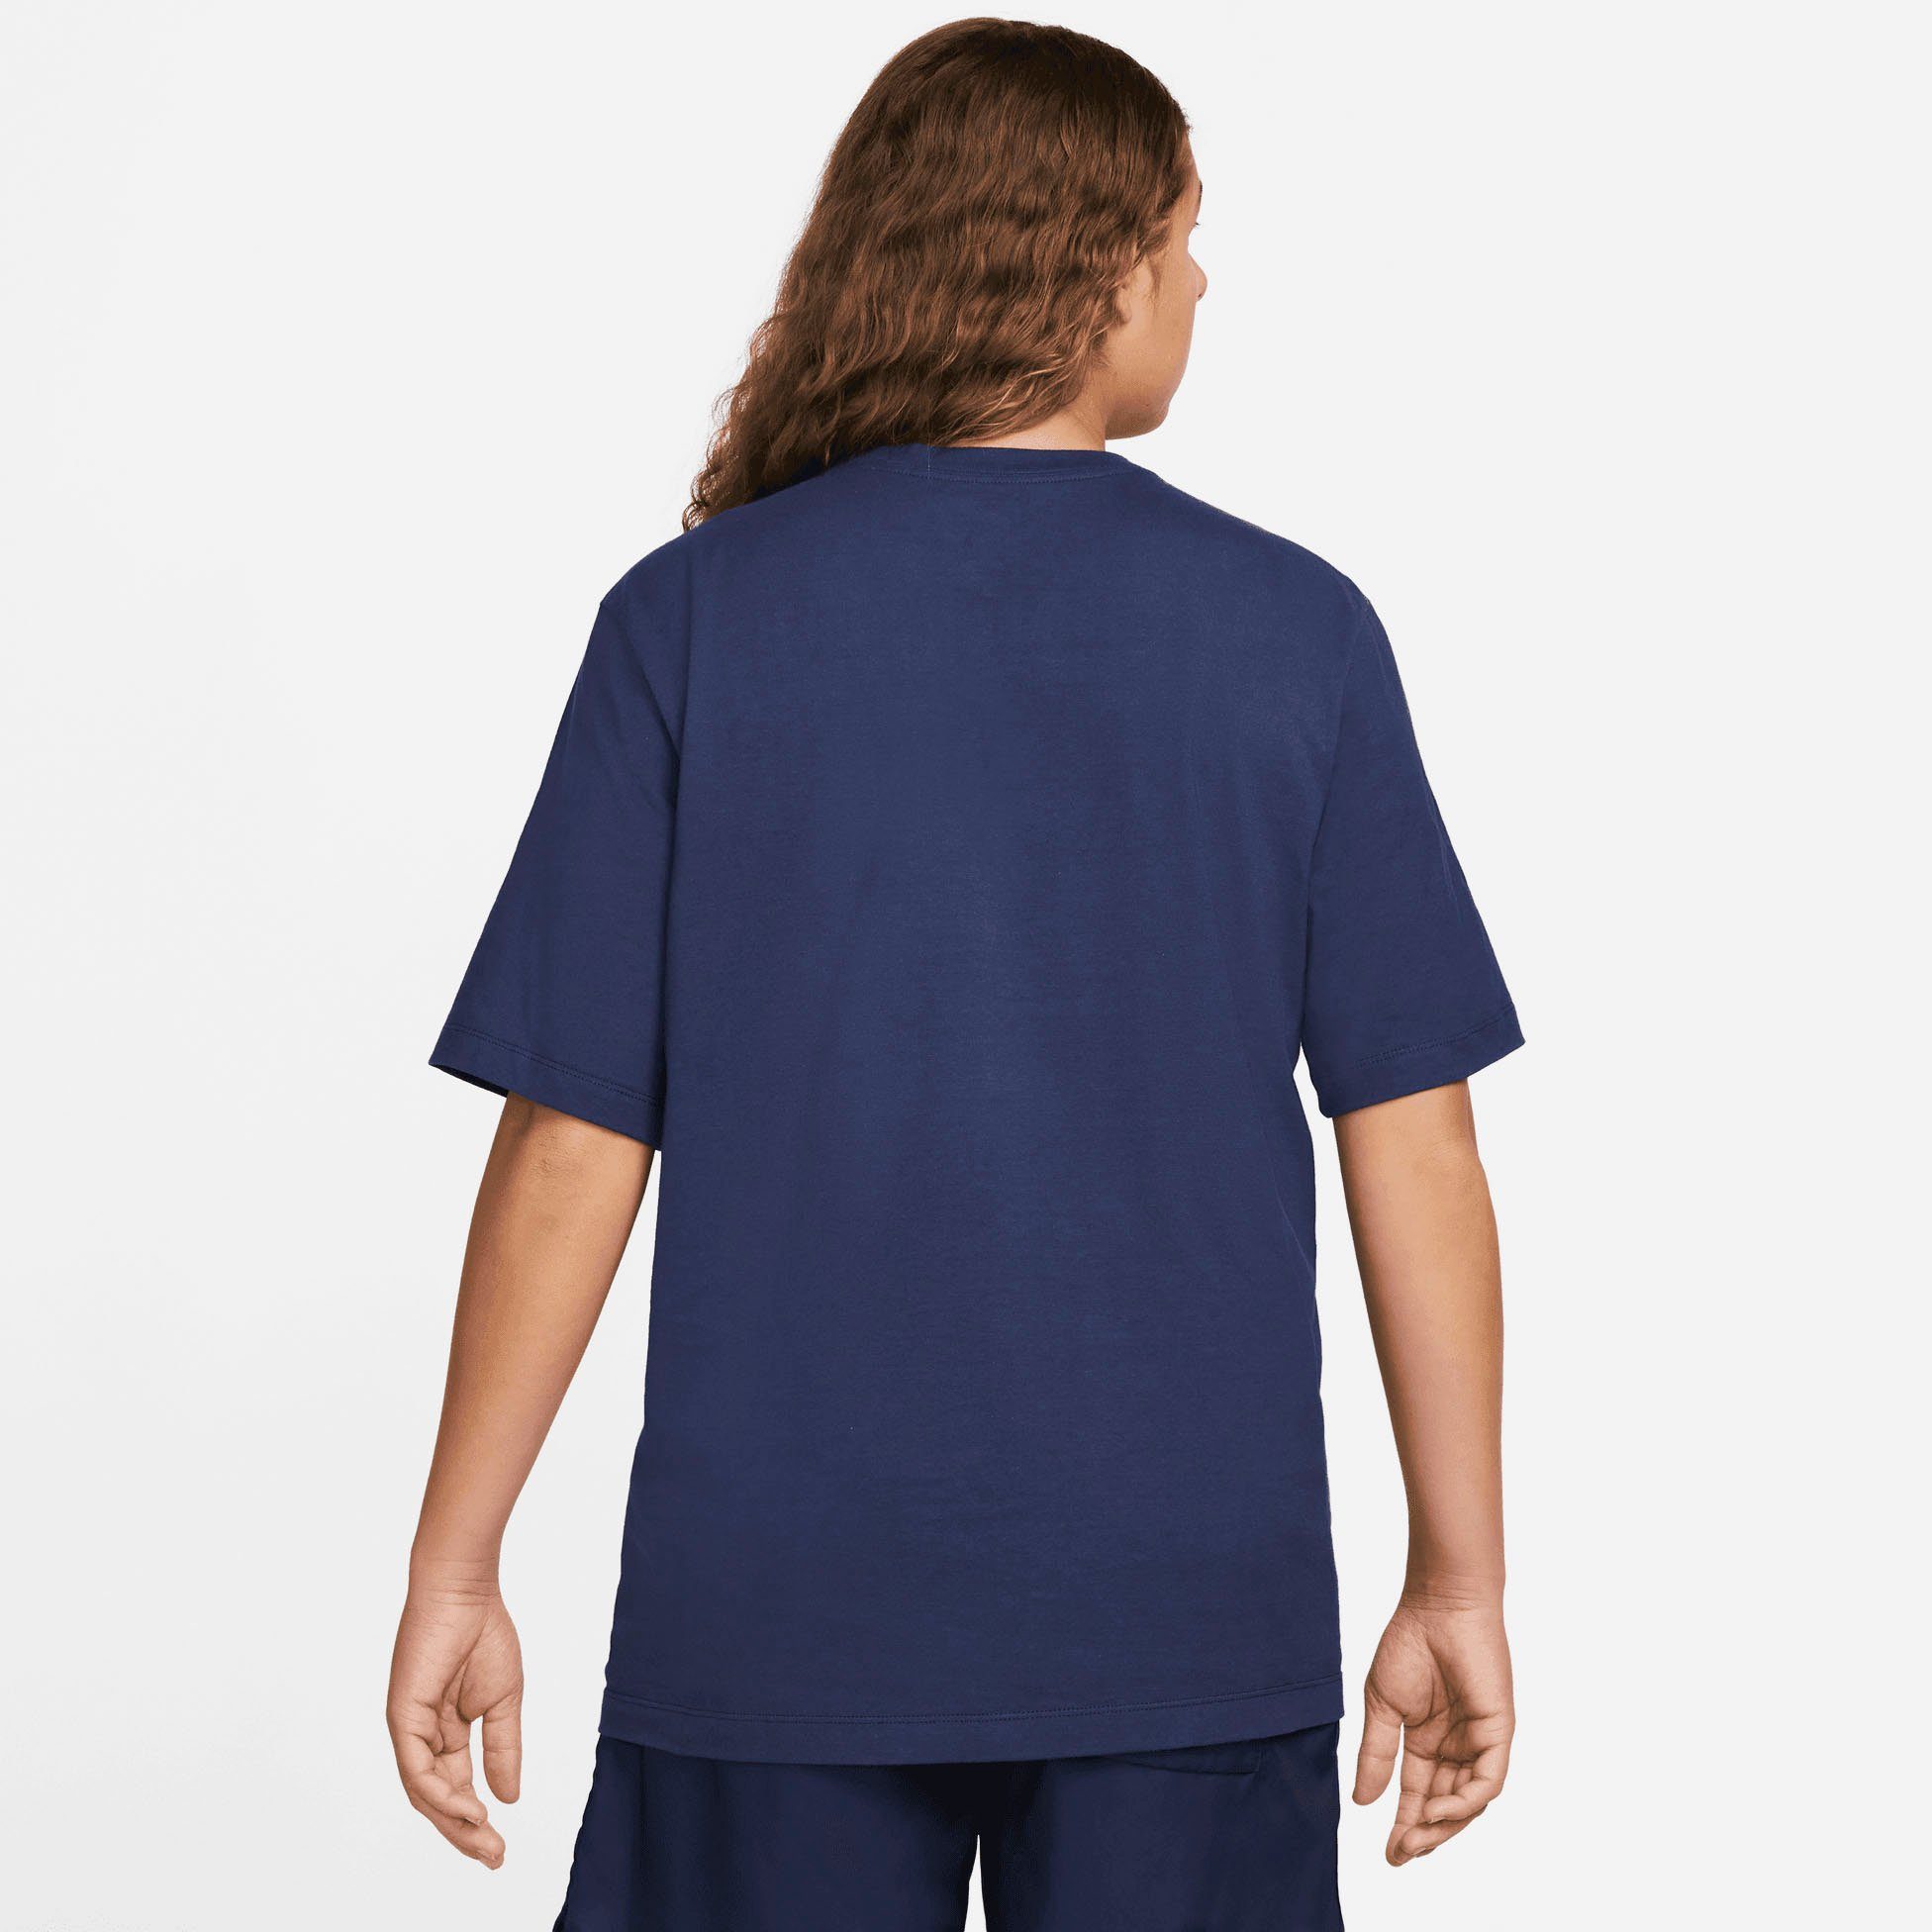 T-Shirt T-Shirt Sportswear blau Nike Men's